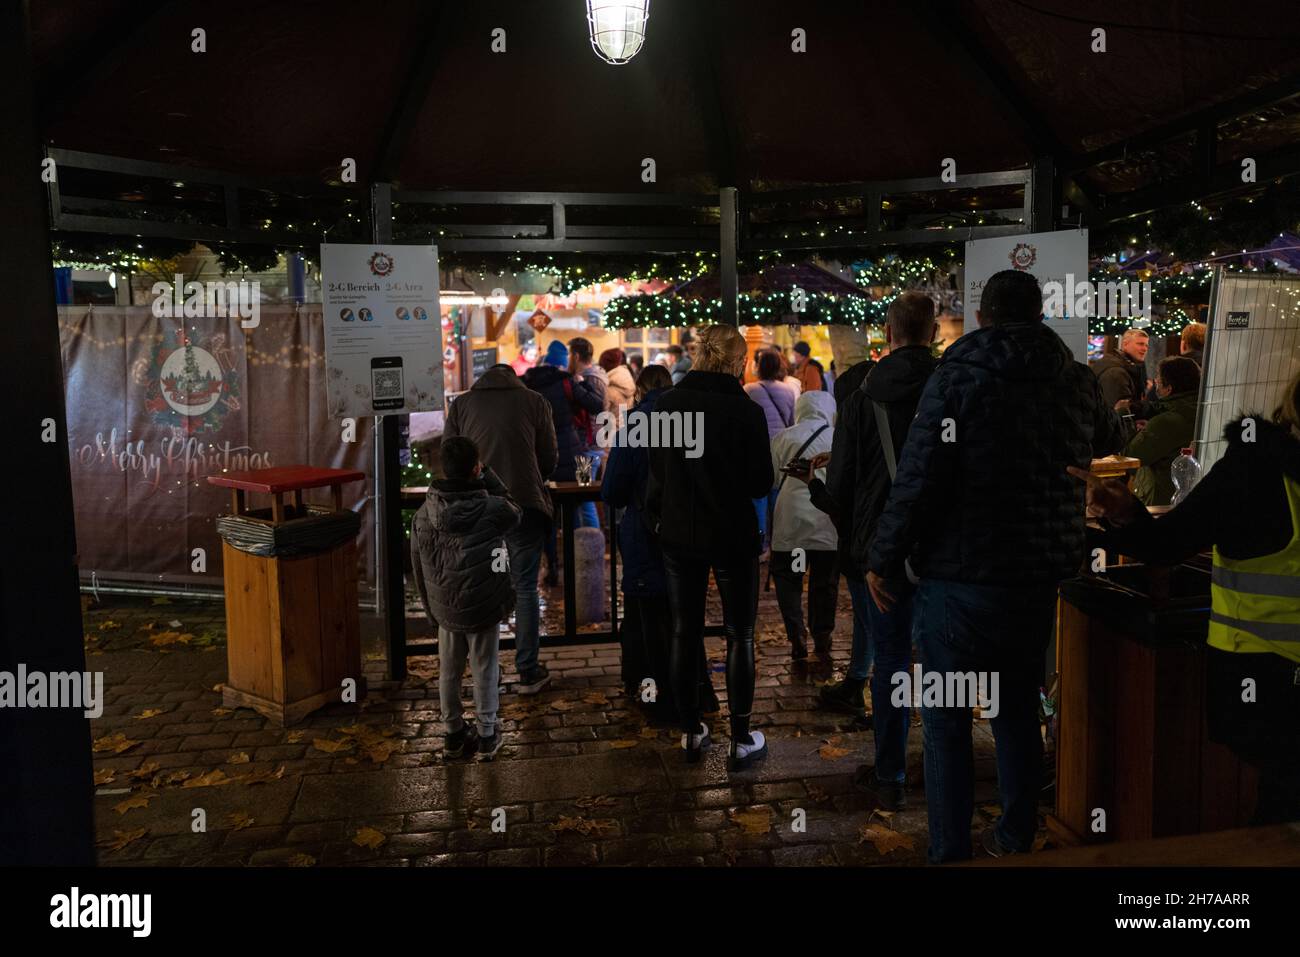 Mercado de navidad de Hamburgo, Alemania con covid19 restricciones de entrada Foto de stock